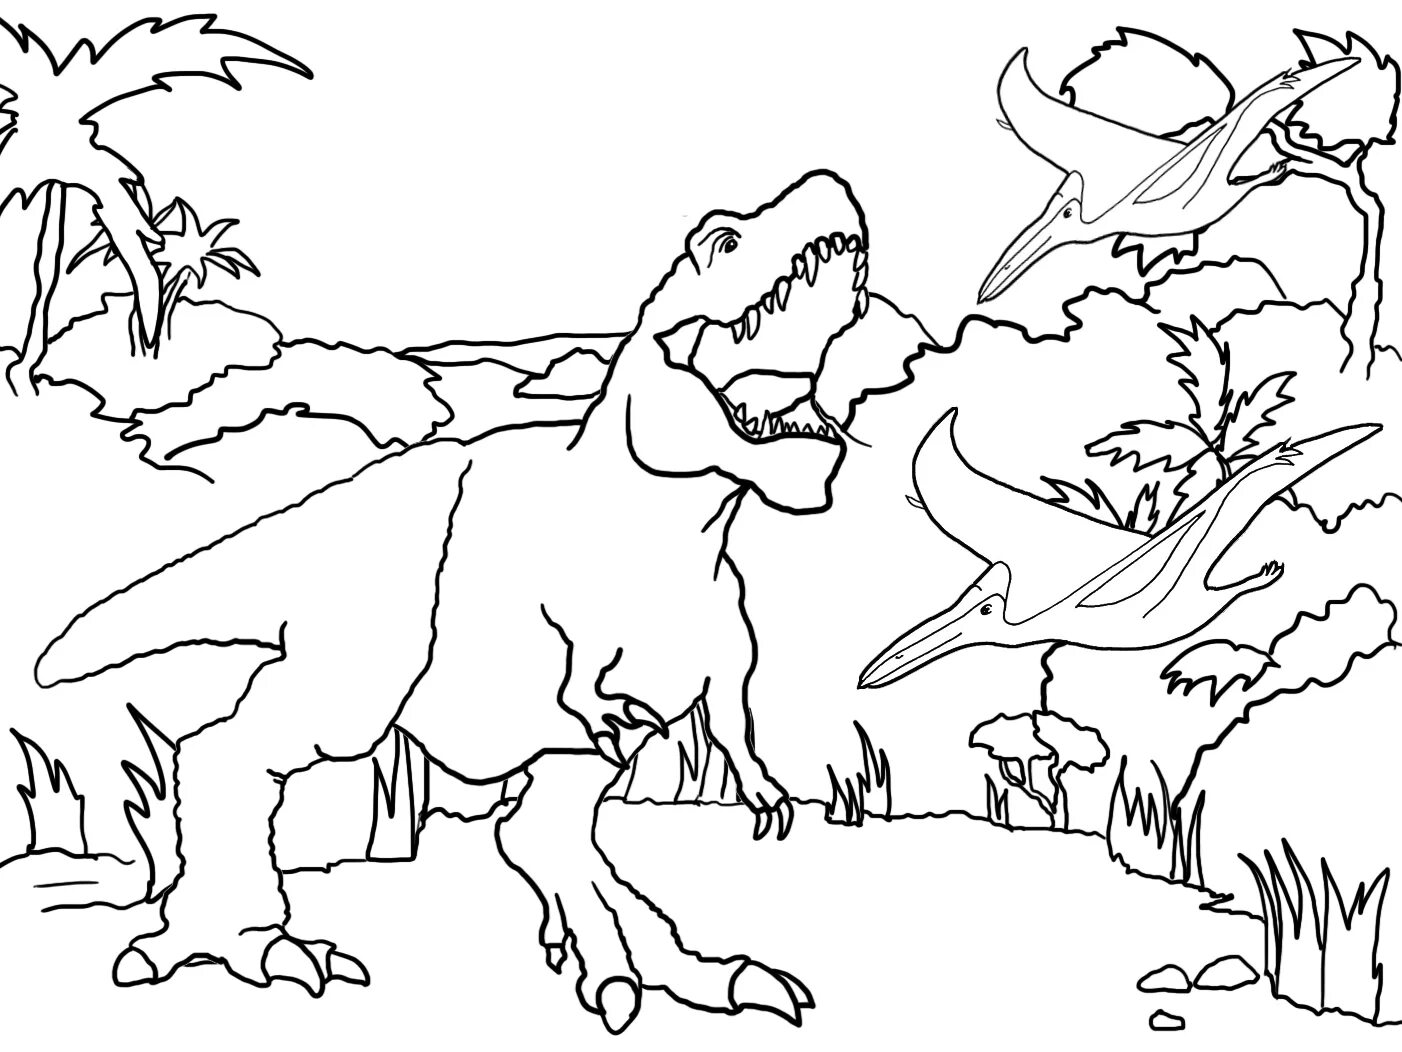 Раскраска динозавр формат а4. Тарбозавр разукрашка. Раскраски для детей Тарбозавр. Раскраски для мальчиков Тарбозавр. Тарбозавр раскраска динозавра.